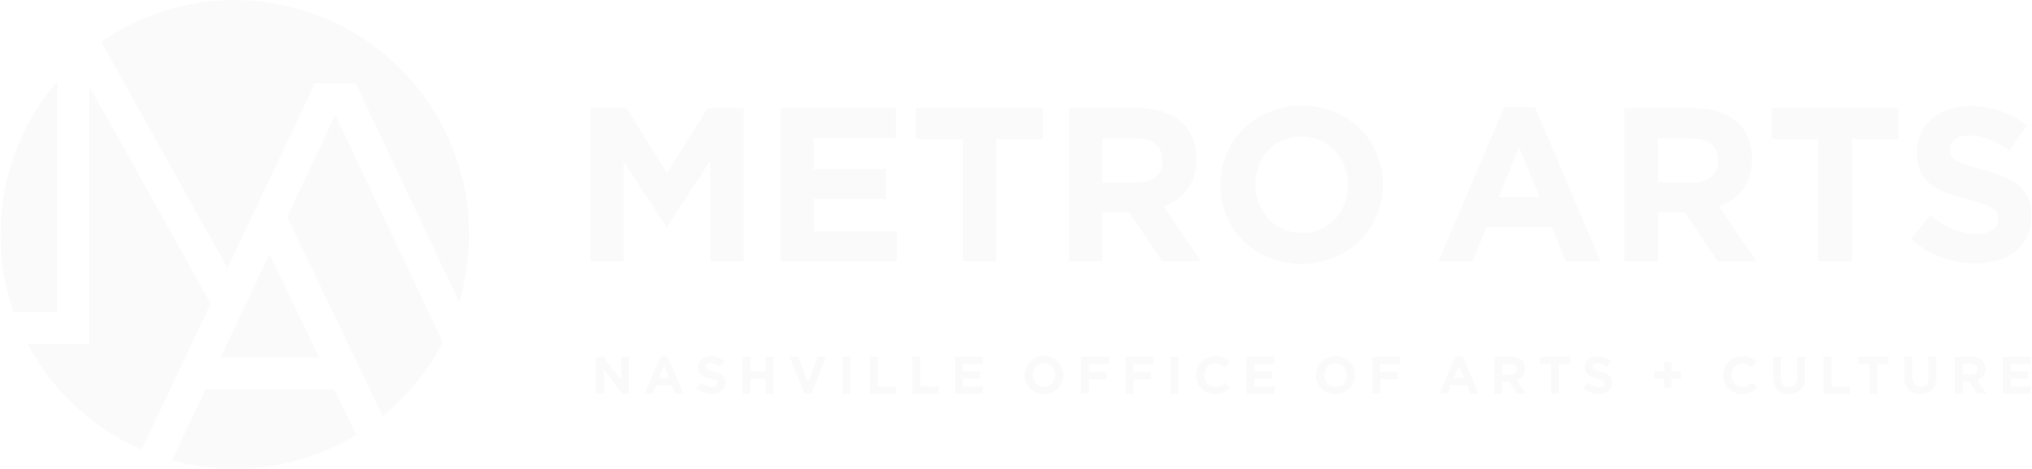 MetroArts-logo